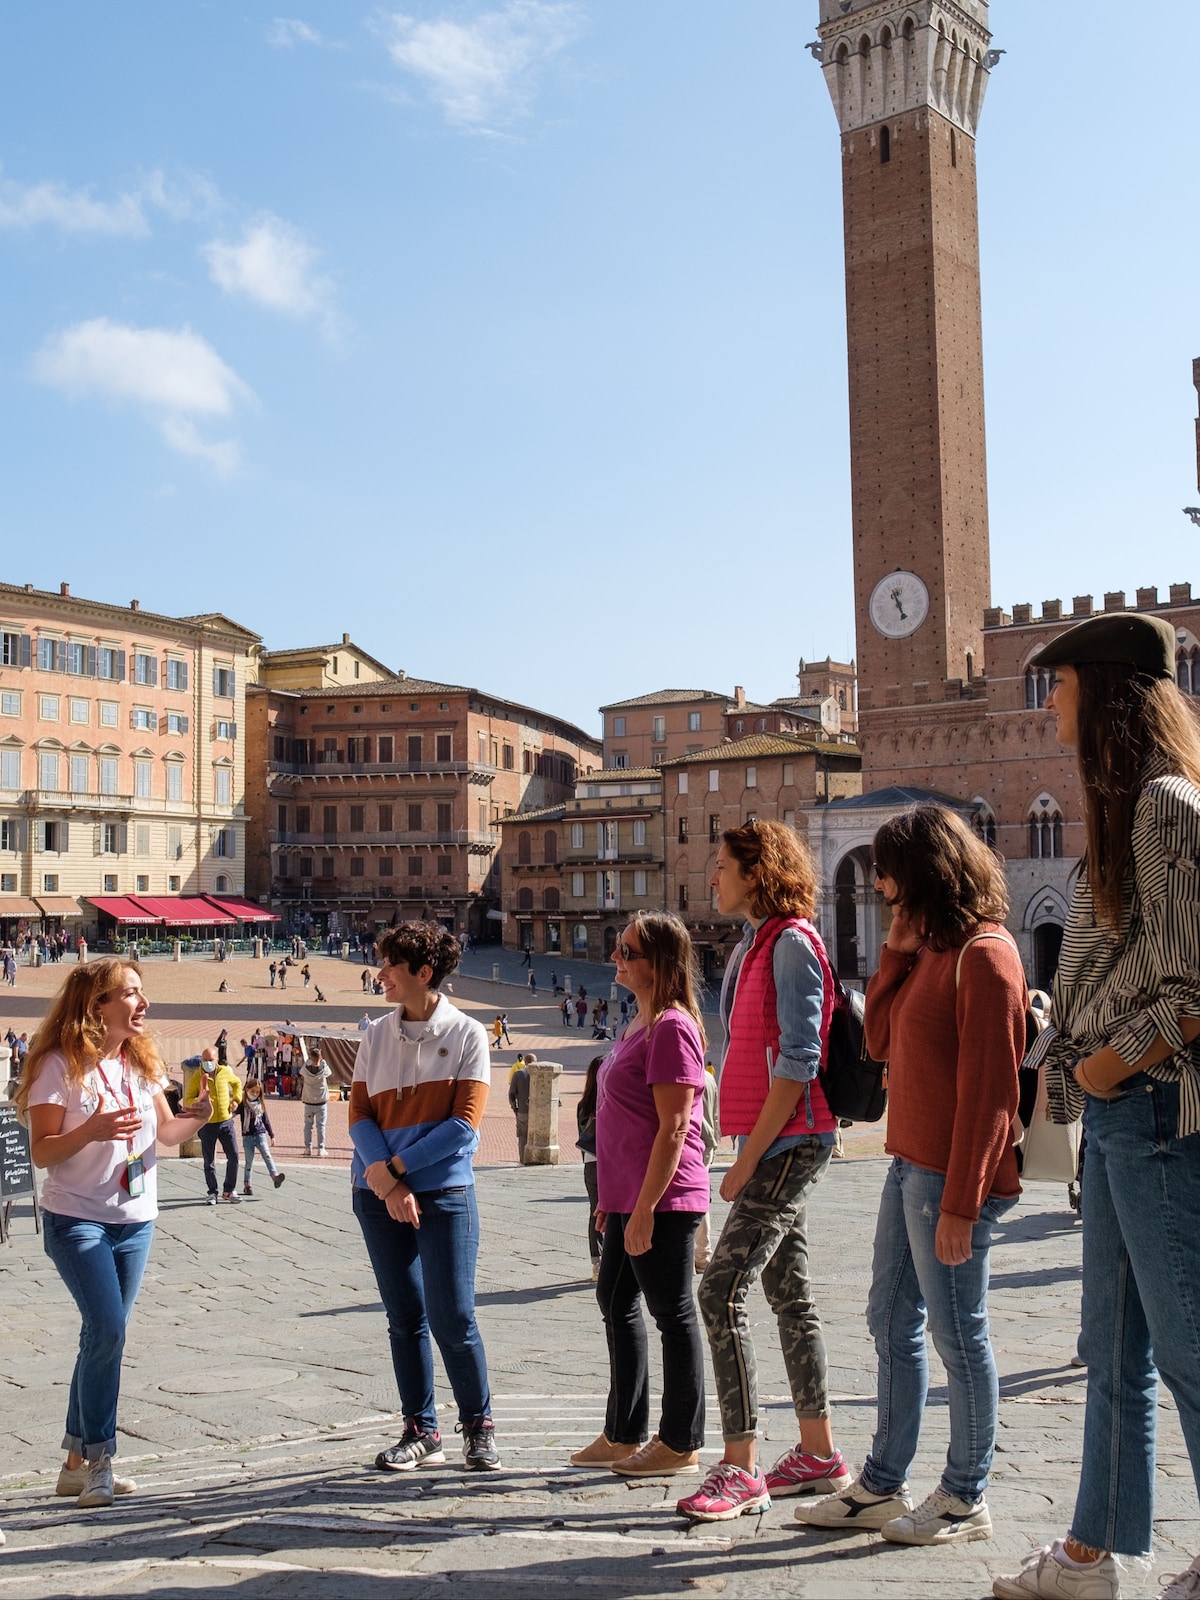 Sienne : les meilleures activités | Visites et expériences uniques -  Toscane, Italie | Airbnb